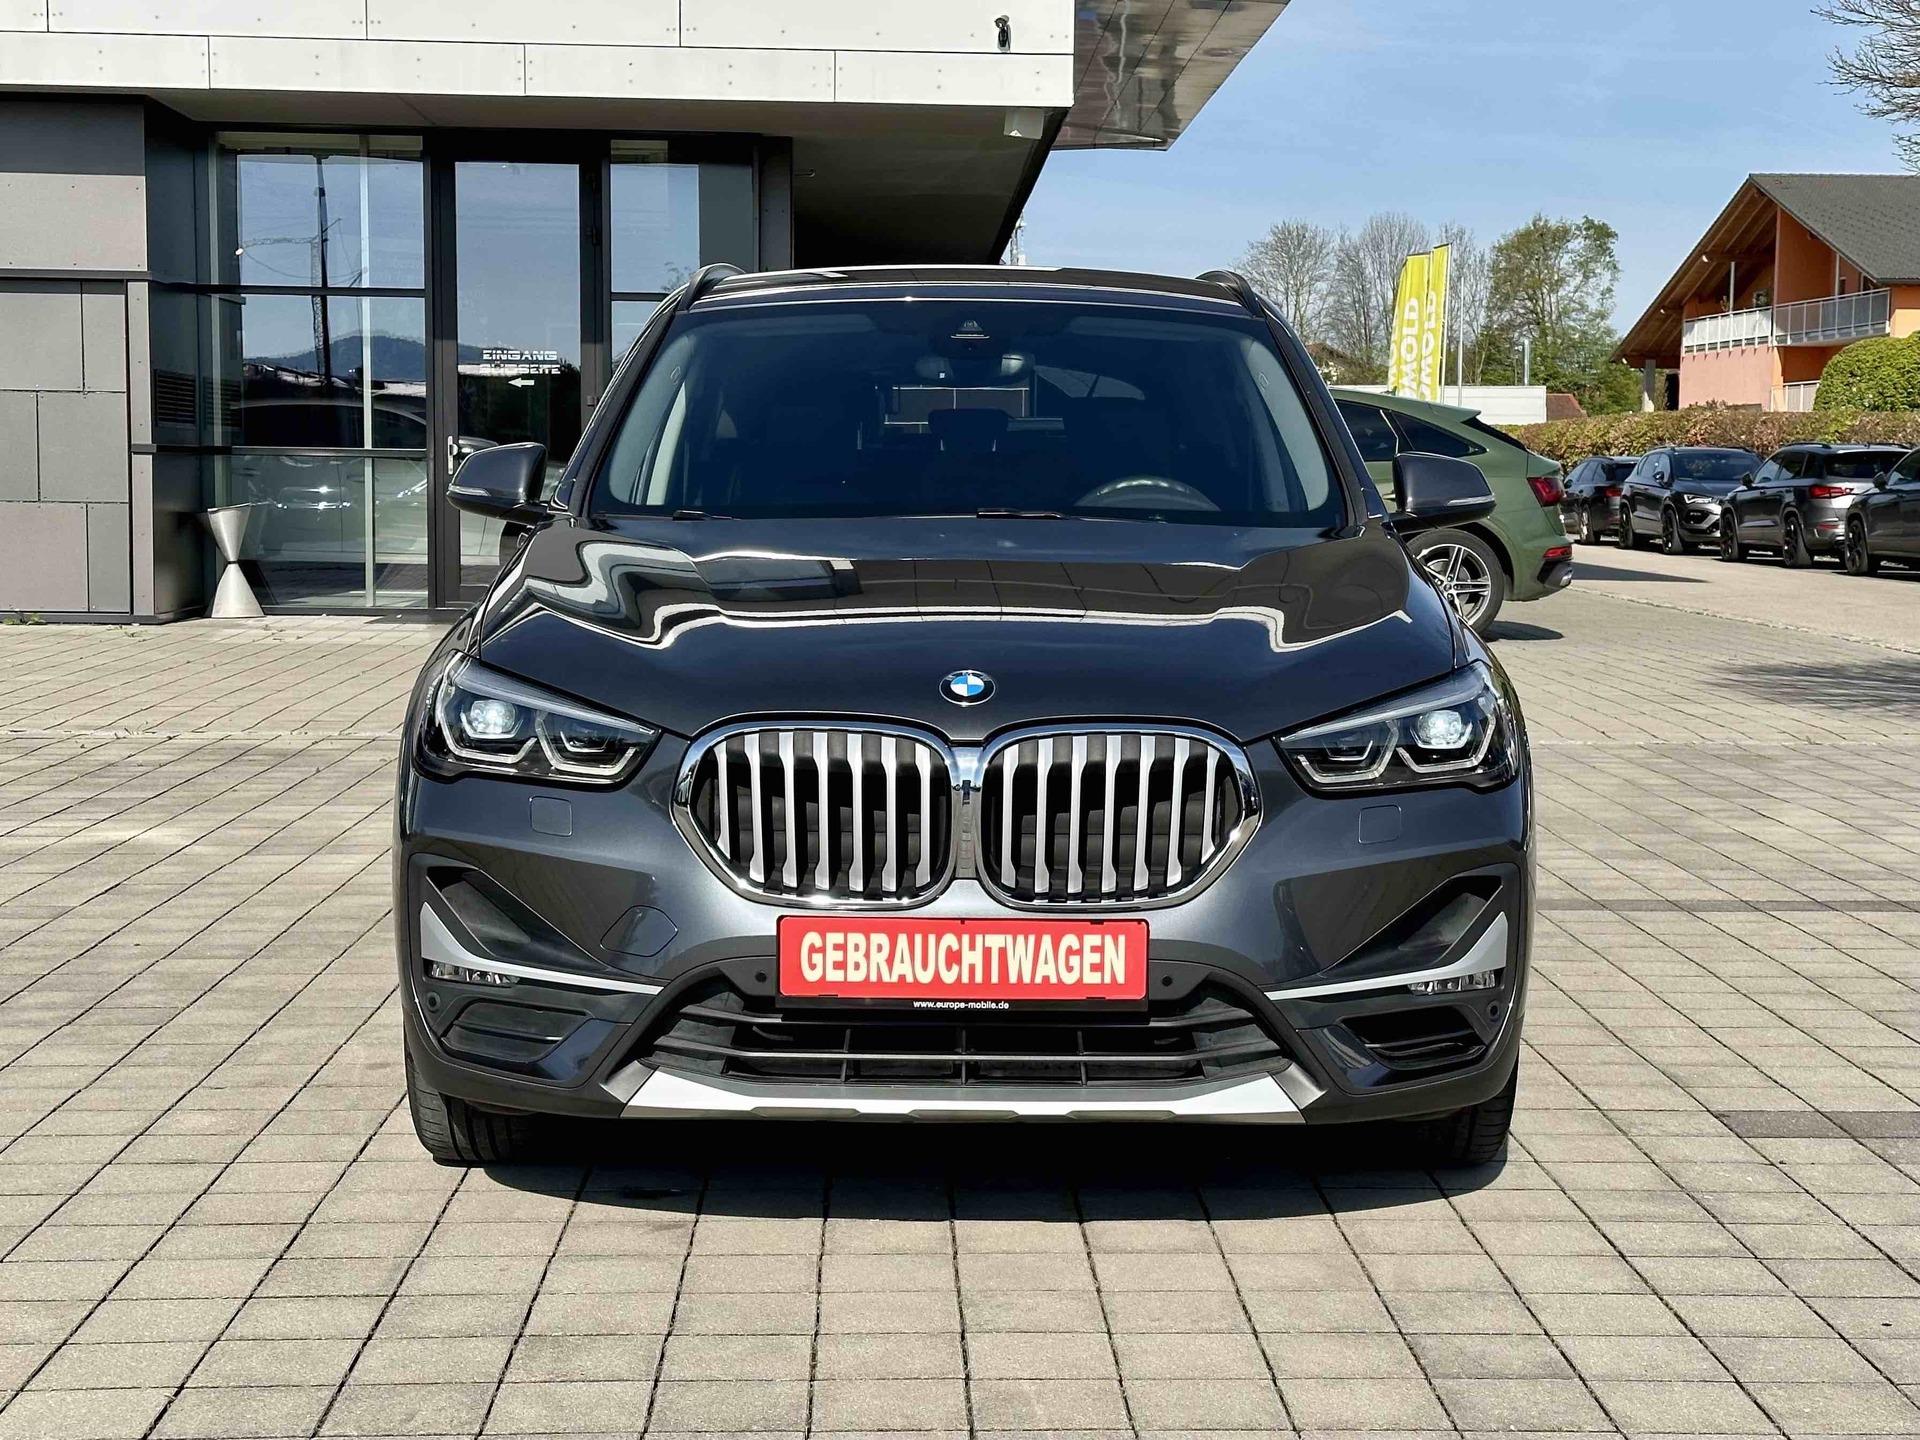 BMW X1 SUV/Geländewagen/Pickup in Schwarz gebraucht in Wiehl für